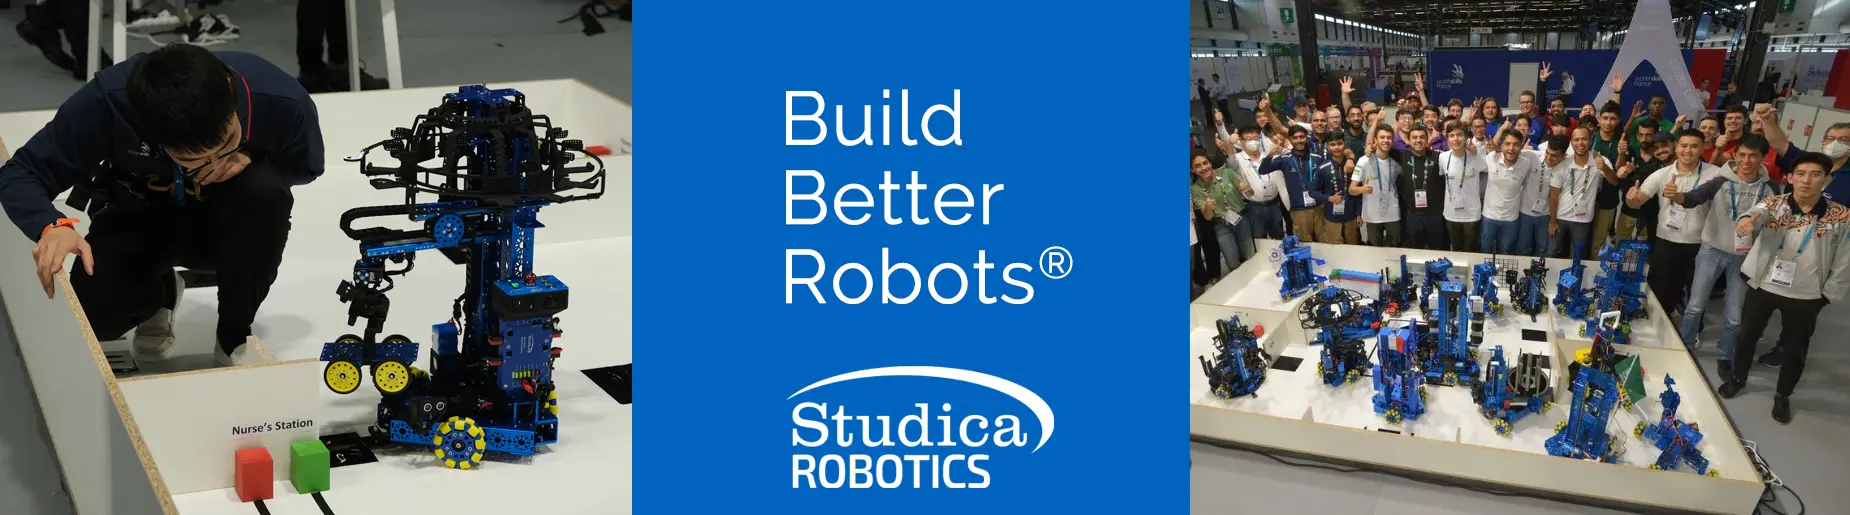 Studica Robotics building system platform